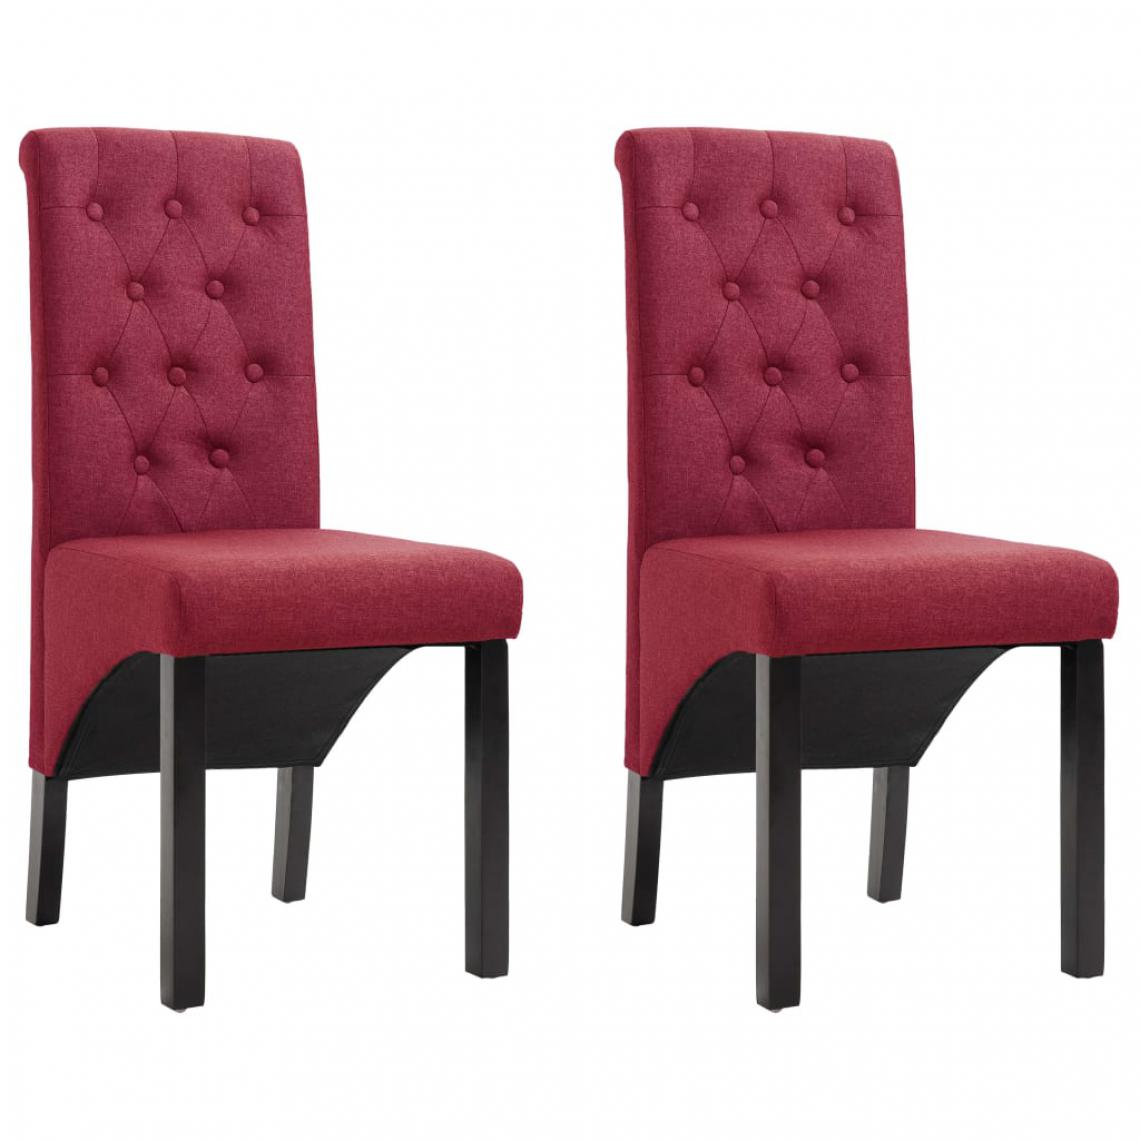 Chunhelife - Chunhelife Chaises de salle à manger 2 pcs Rouge bordeaux Tissu - Chaises